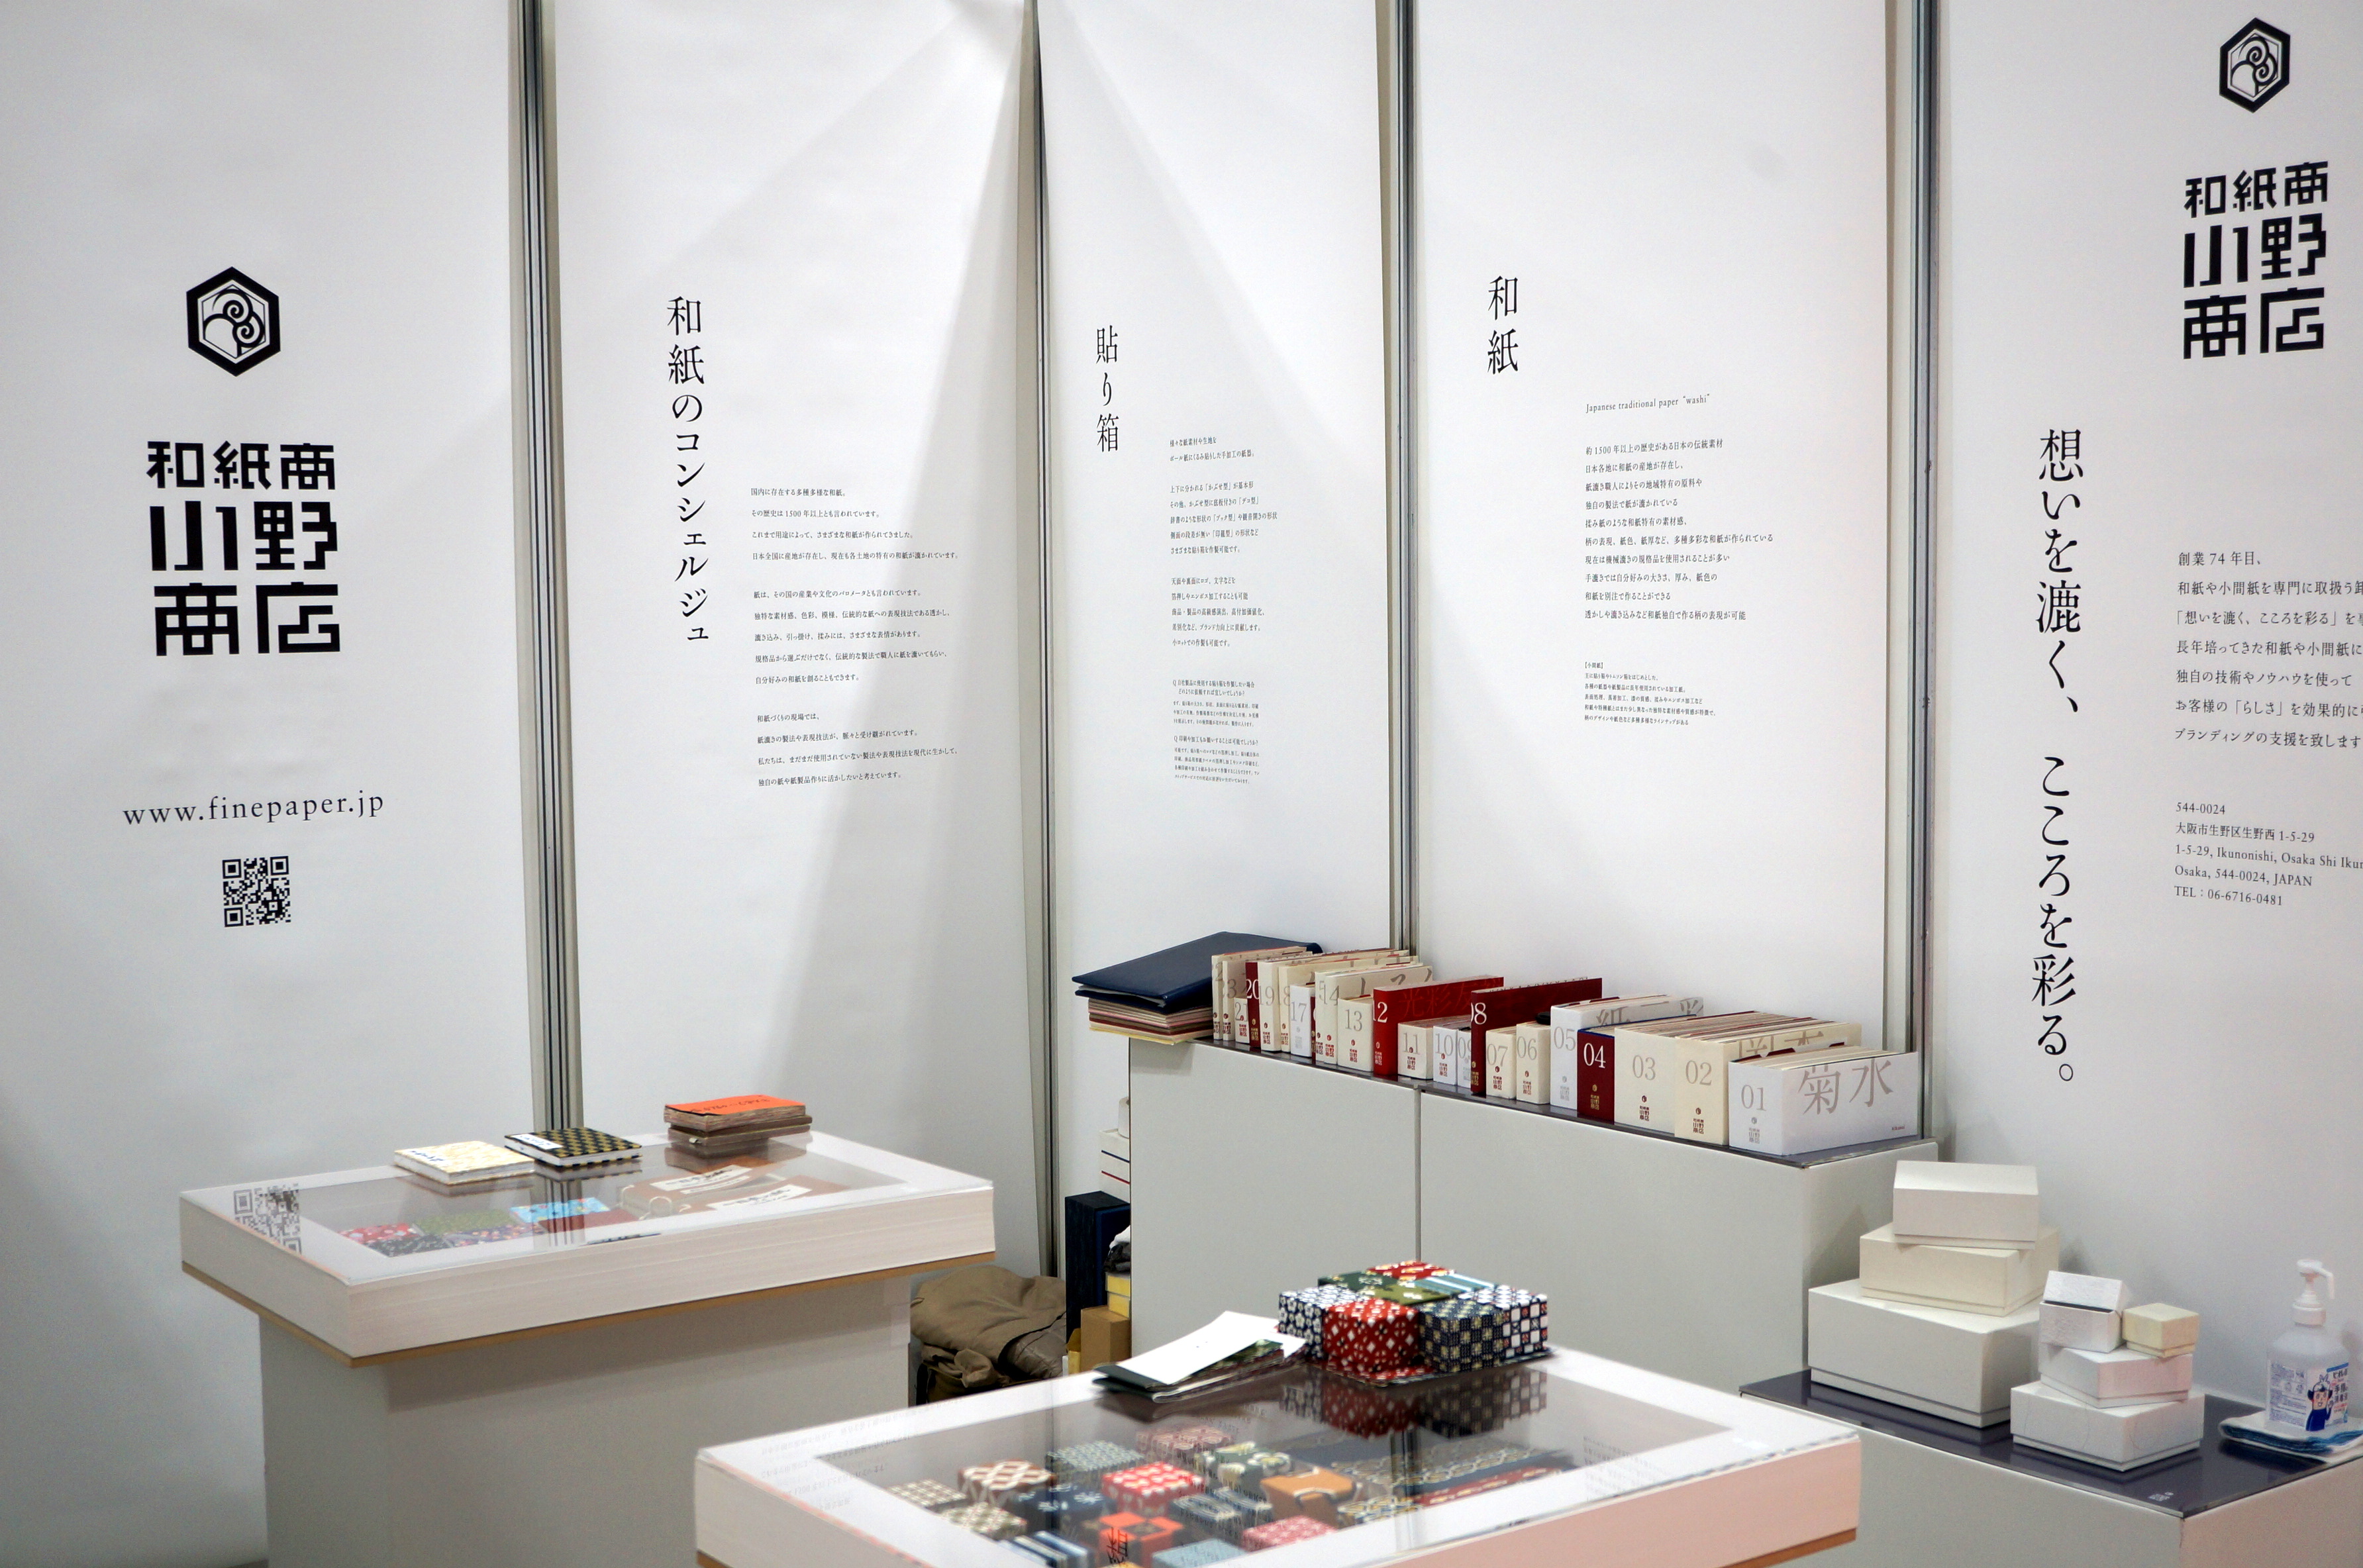 パッケージデザイン展では別注の貼り箱や和紙ラベルなど各種和紙製品を展示・提案しました。